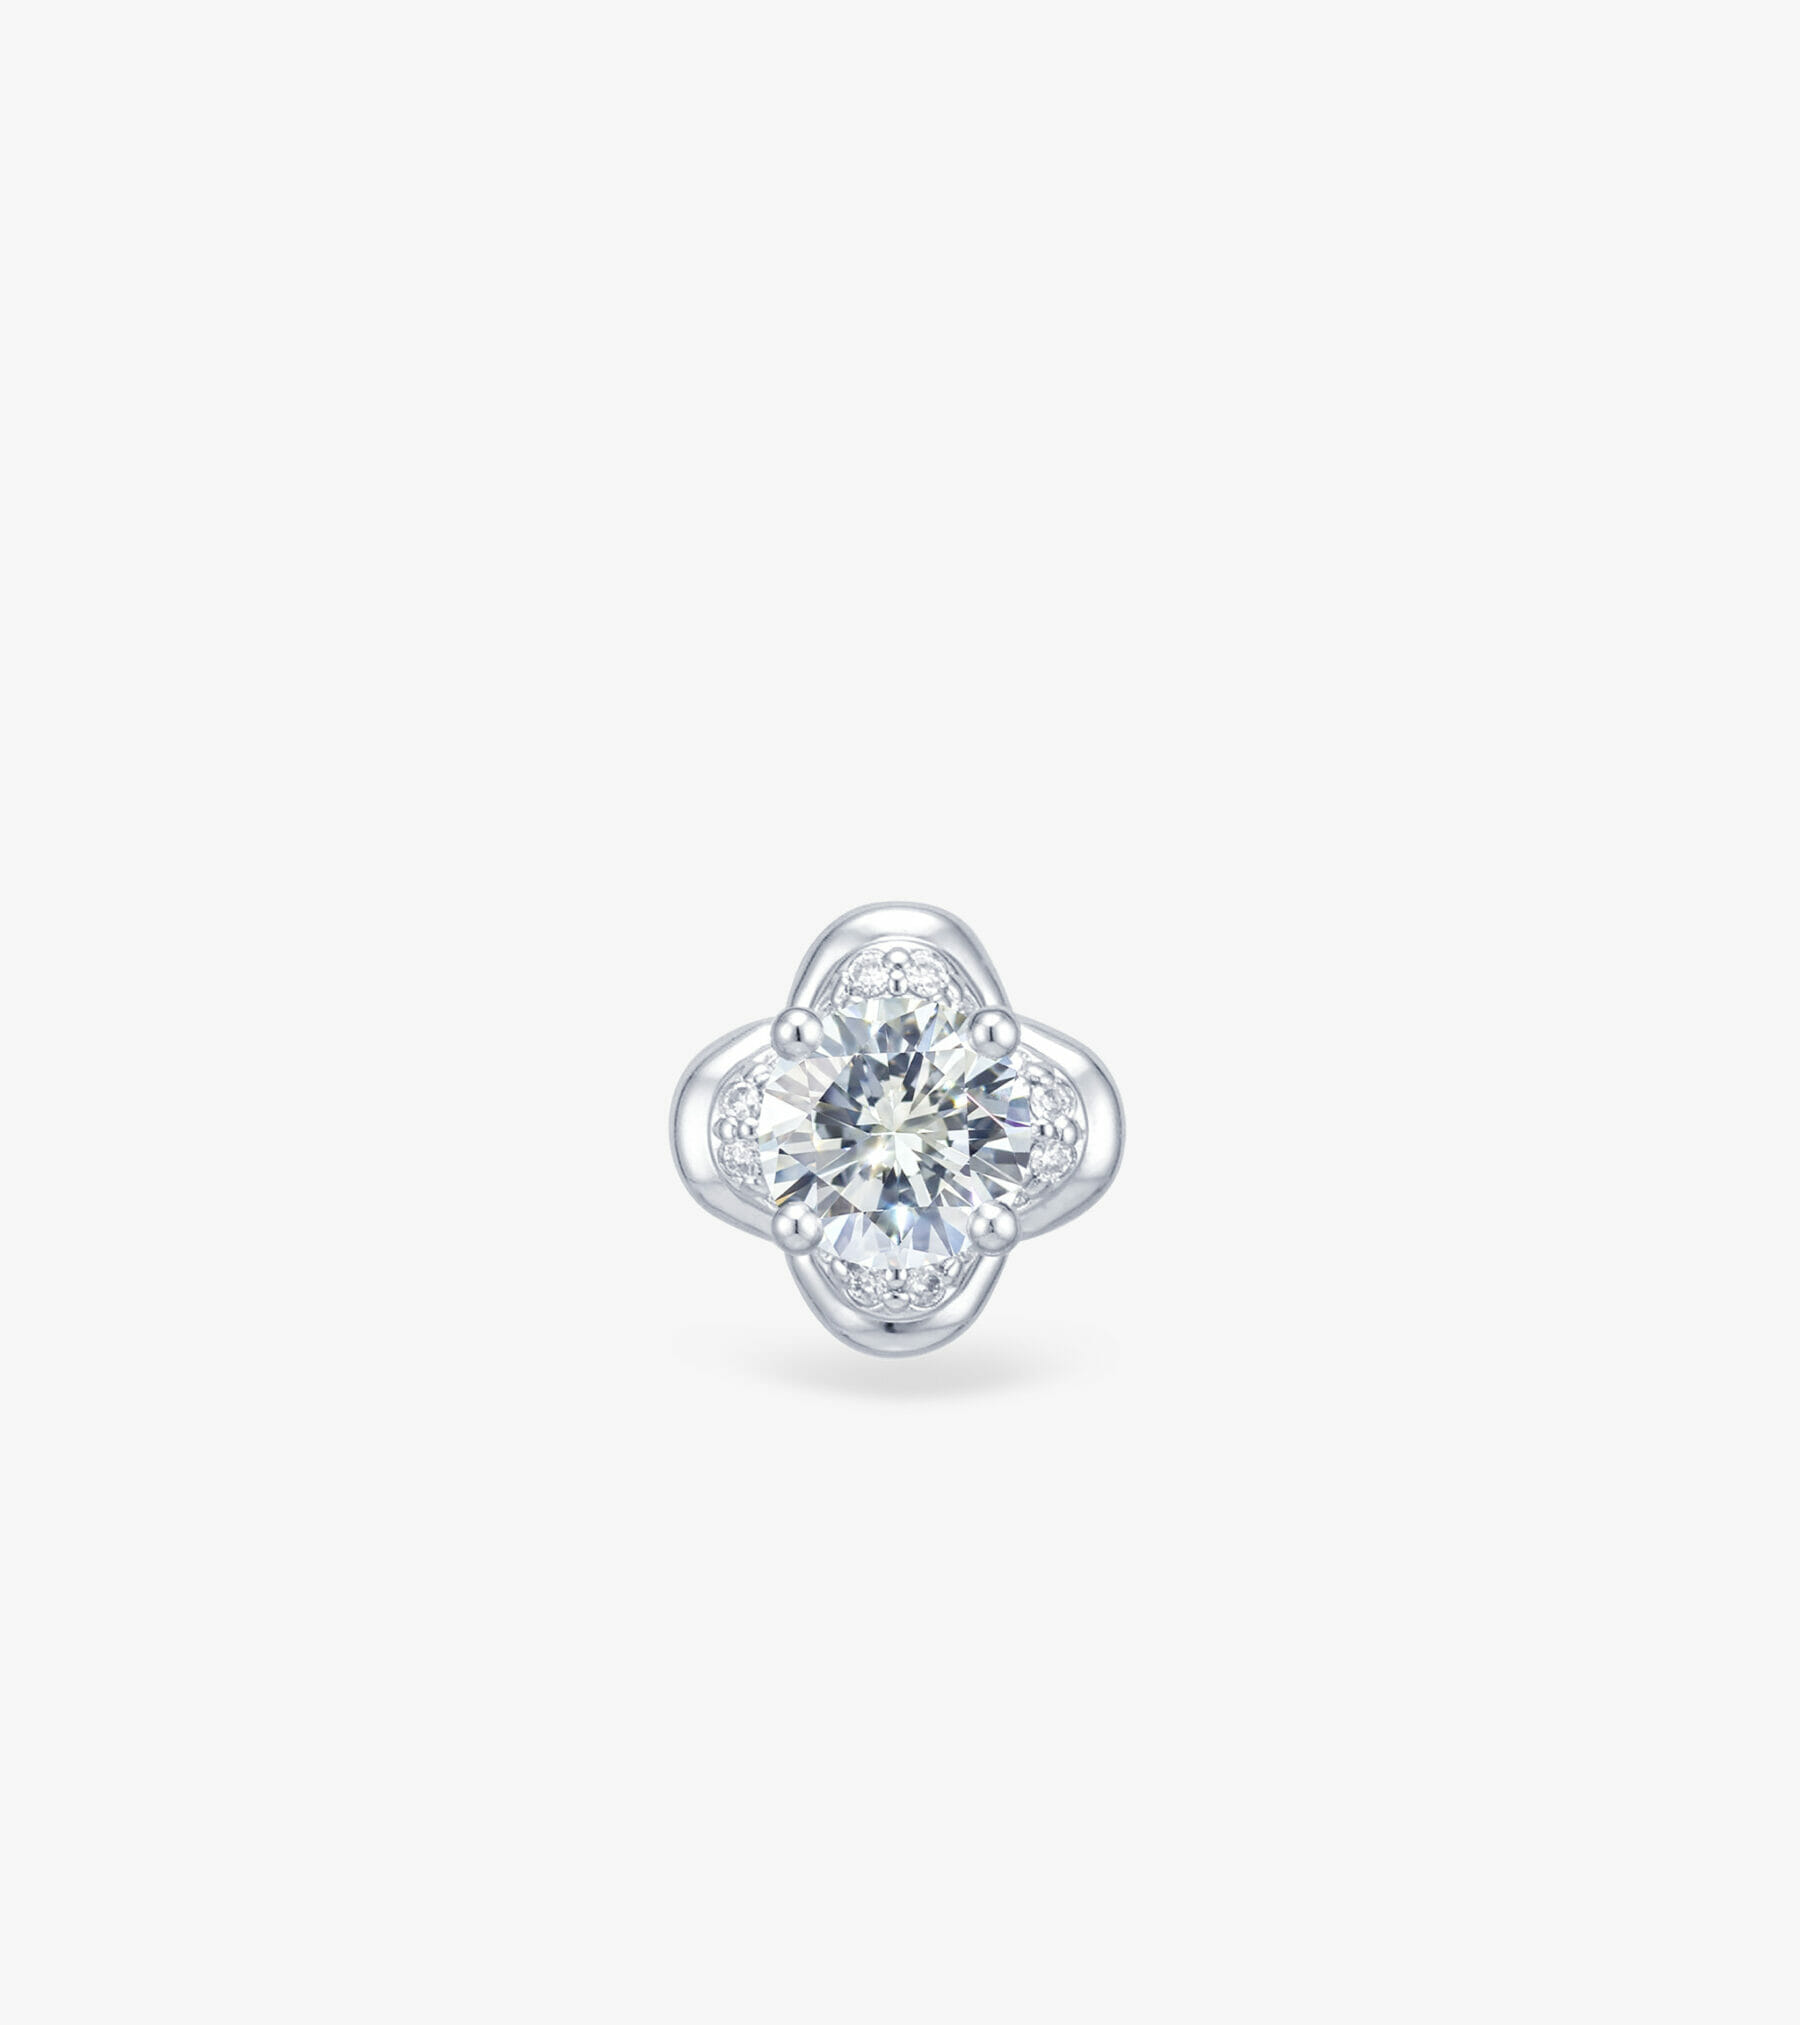 Vỏ bông tai Kim cương Vàng trắng DKBOTKC0000P561